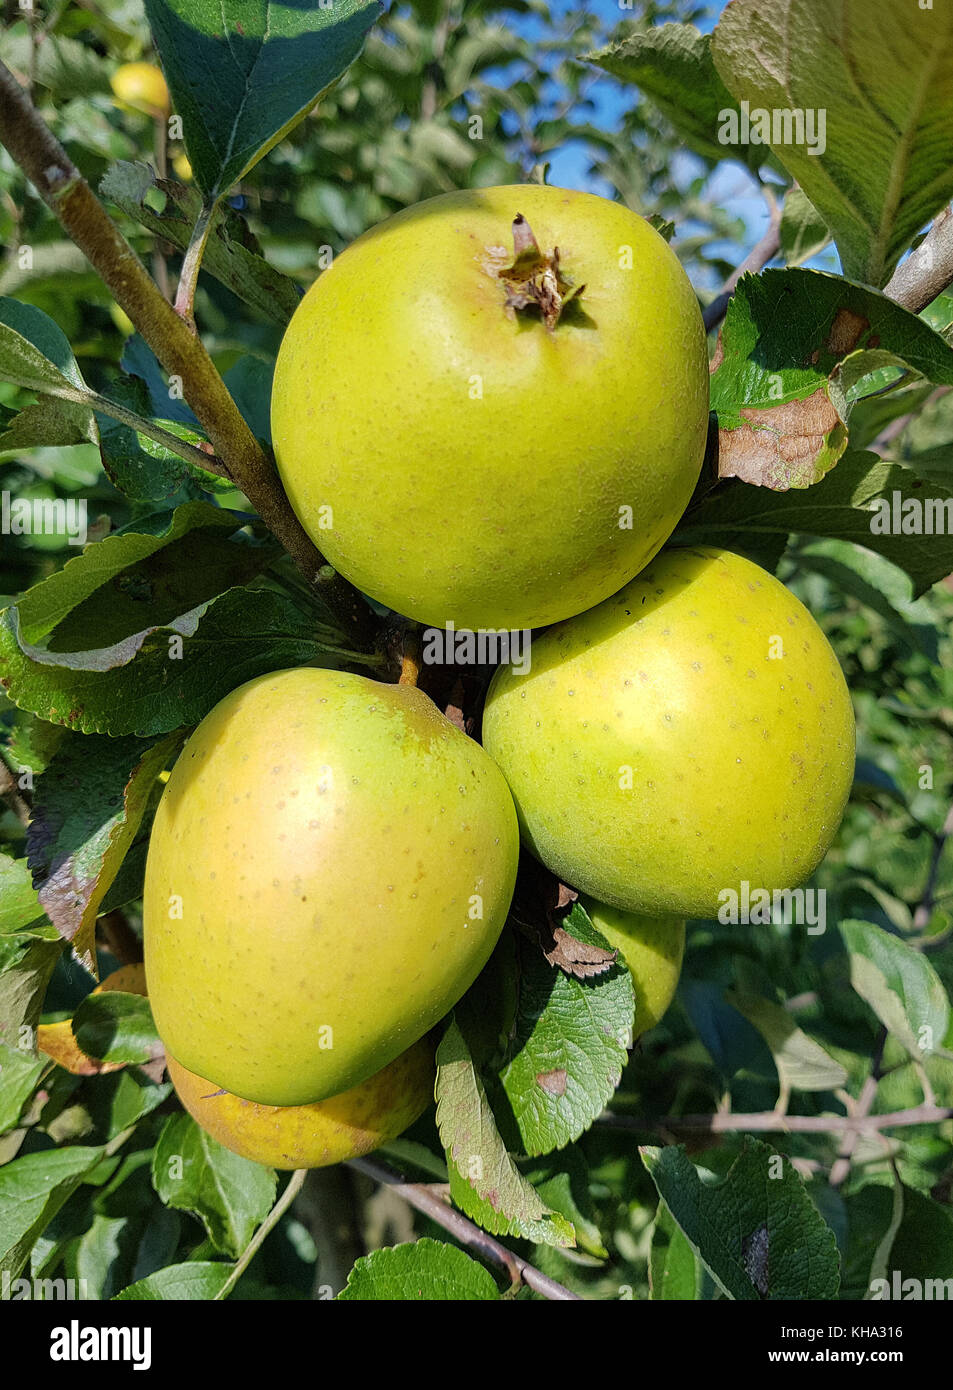 Ananasrenette, Herzapfel, Apfel, Malus, domestica, Alte Apfelsorte Stock Photo